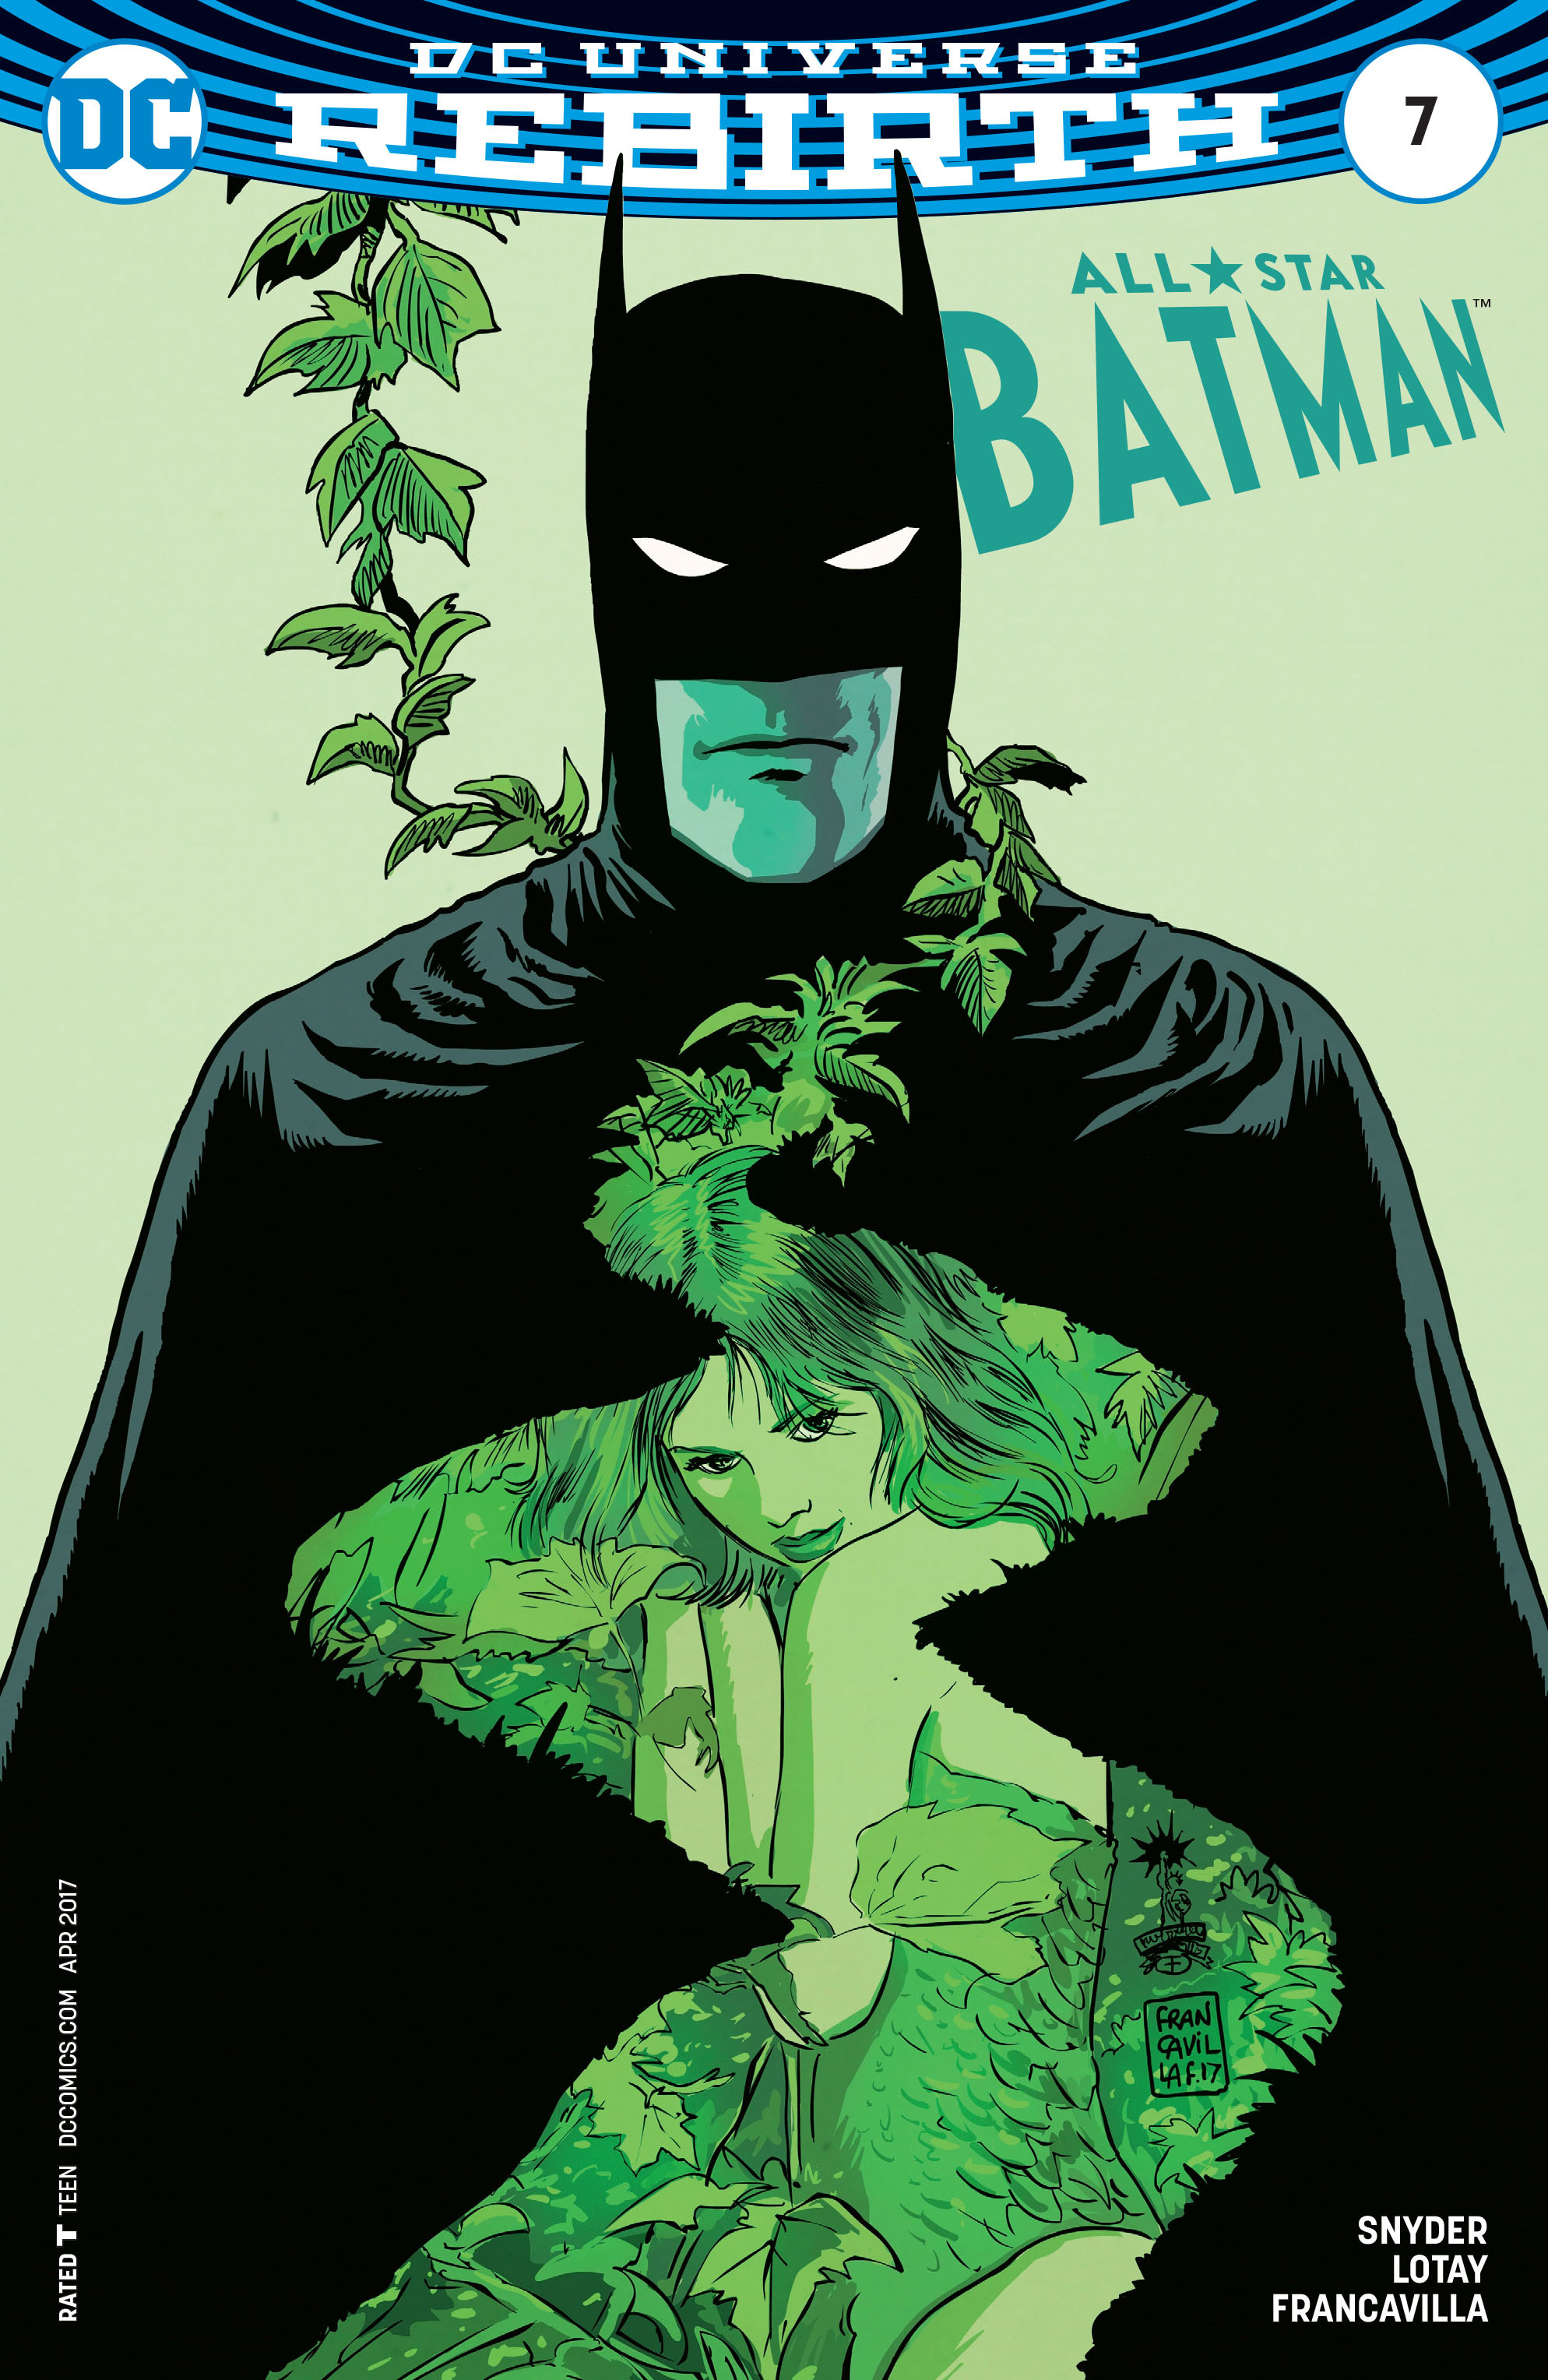 All-Star Batman Vol 1 7 | DC Database | Fandom